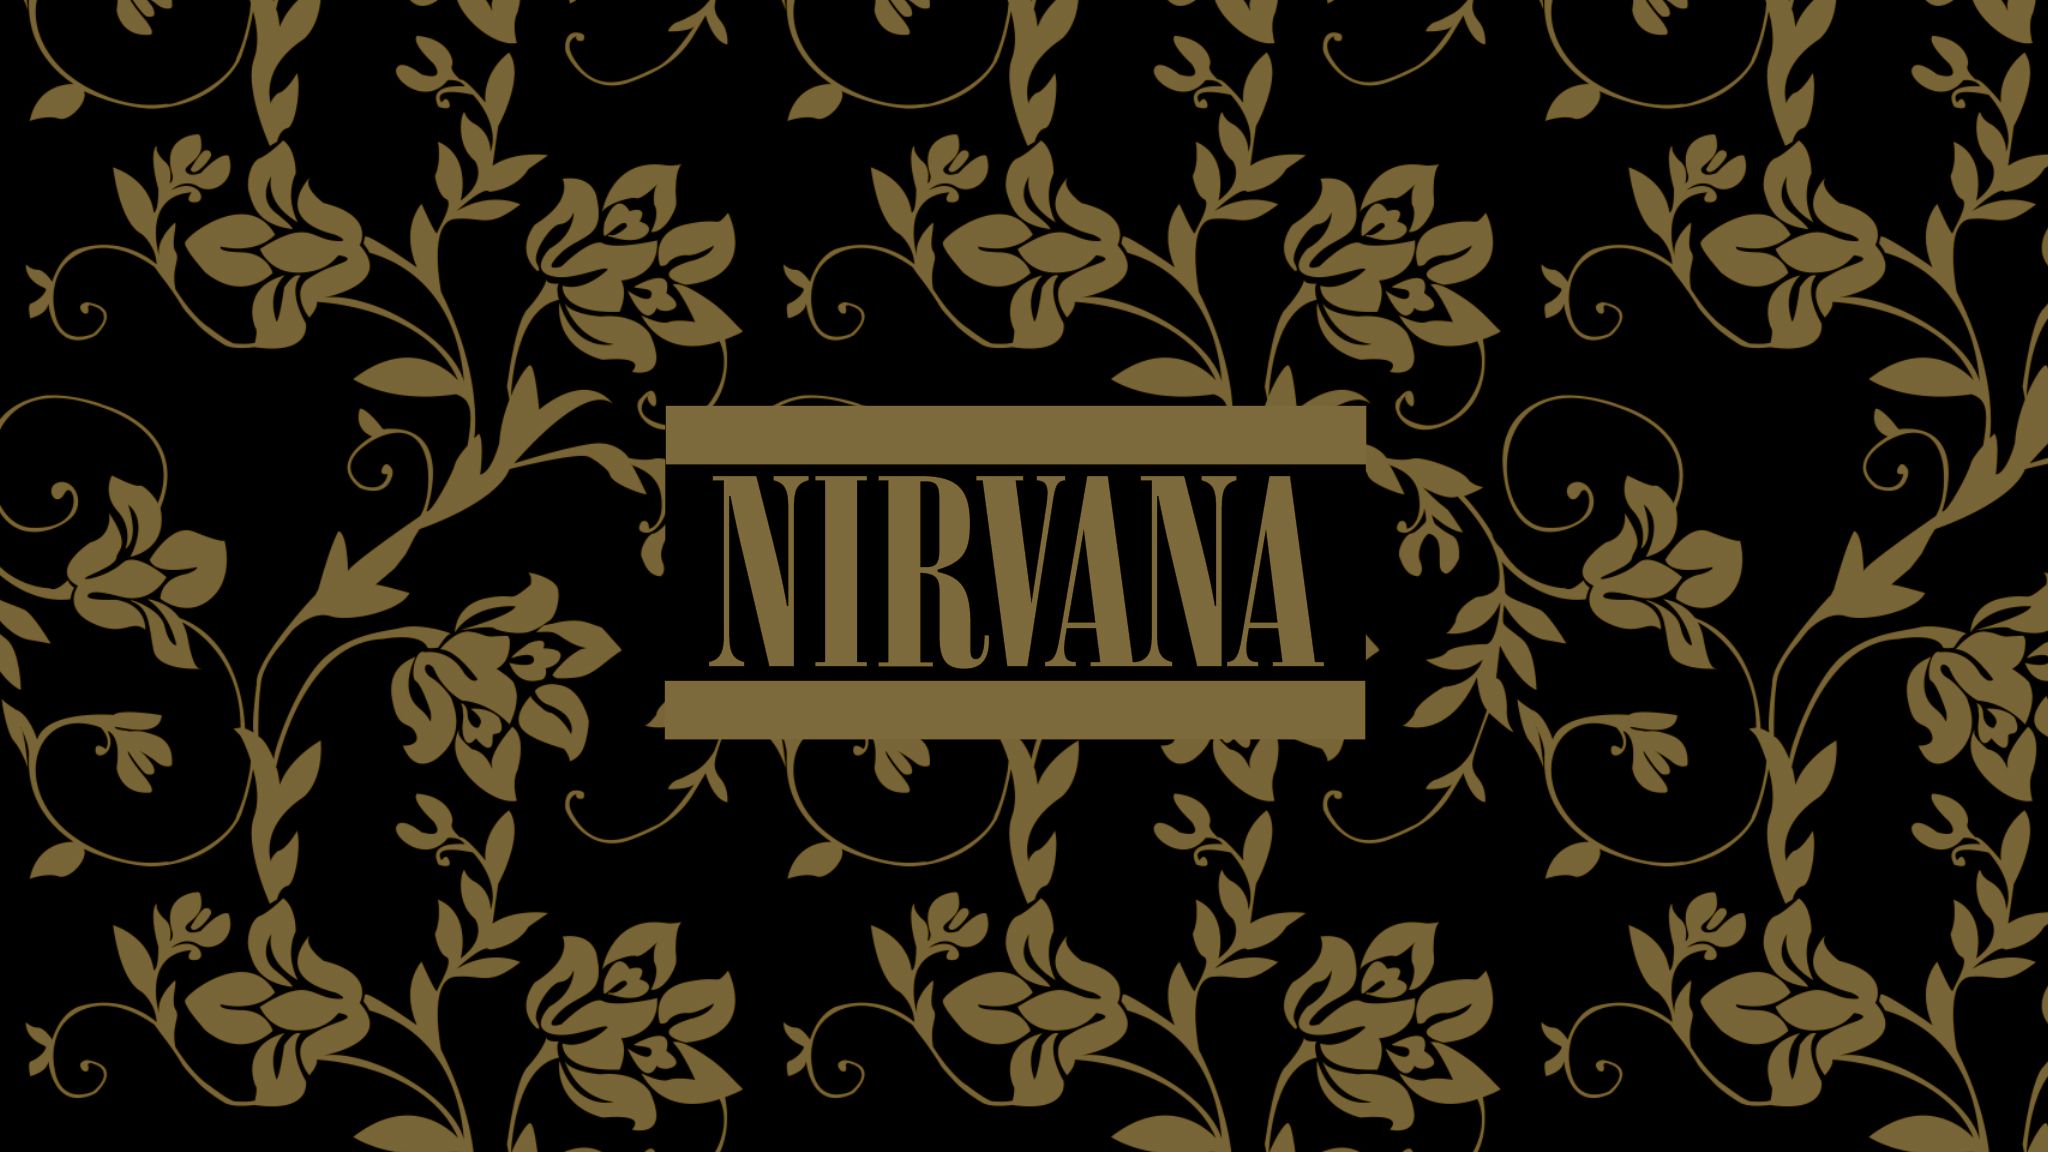 Nirvana Wallpaper | 2048x1152 | ID:53181